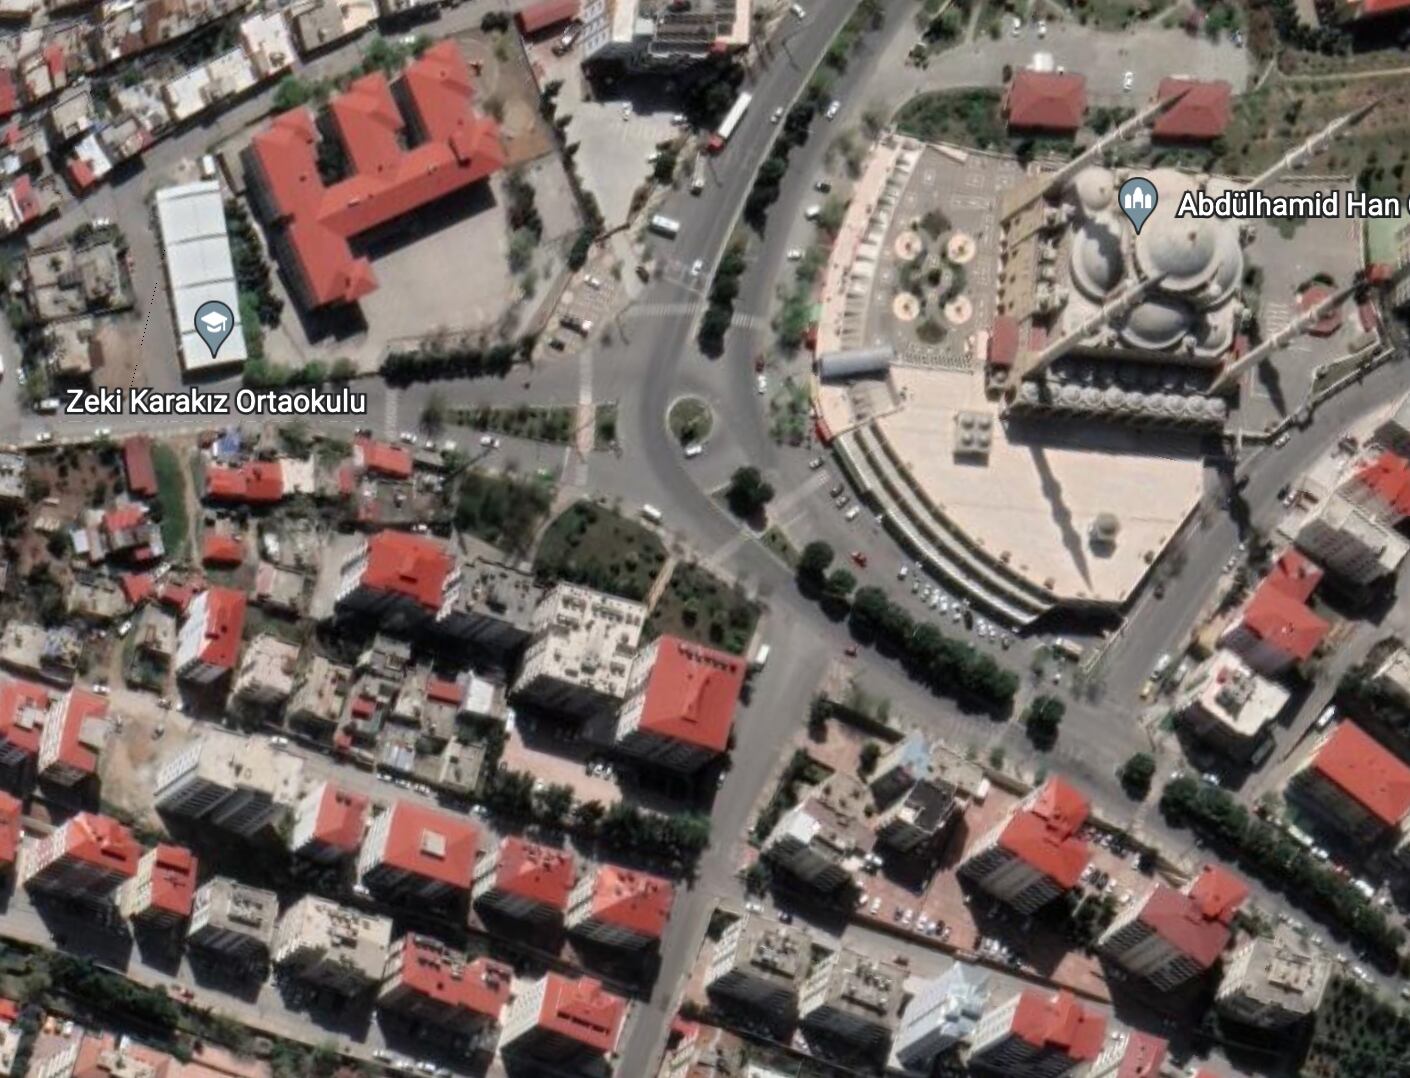 Edificios cercanos a la mezquita Abdülhamid Han en la ciudad de Kahramanmaras, Turquía. (Imagen tomada de Google Earth)